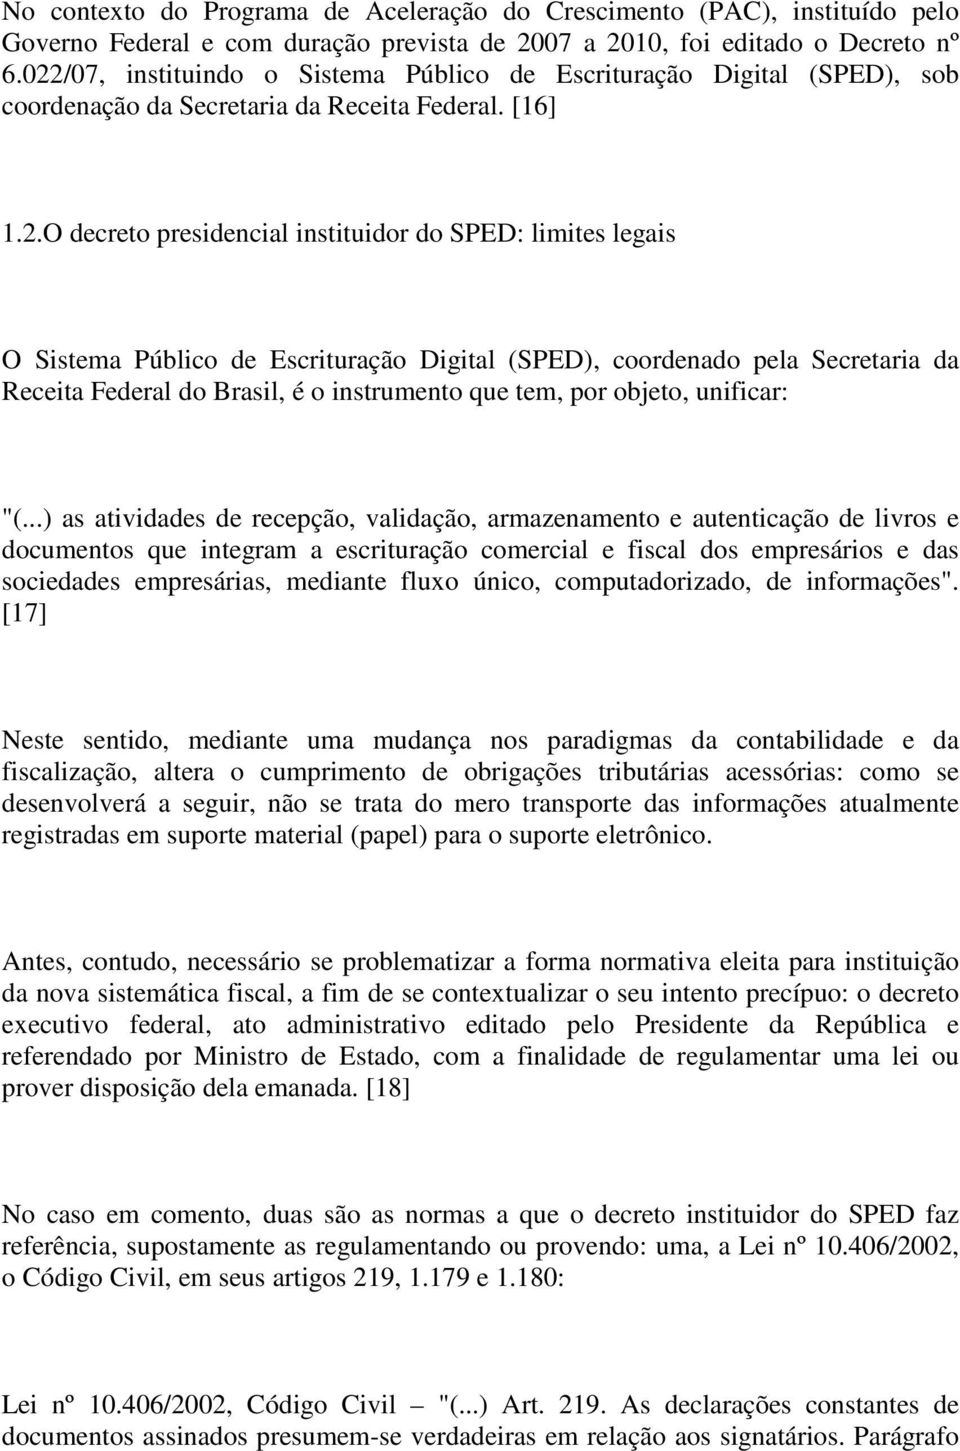 Público de Escrituração Digital (SPED), coordenado pela Secretaria da Receita Federal do Brasil, é o instrumento que tem, por objeto, unificar: "(.